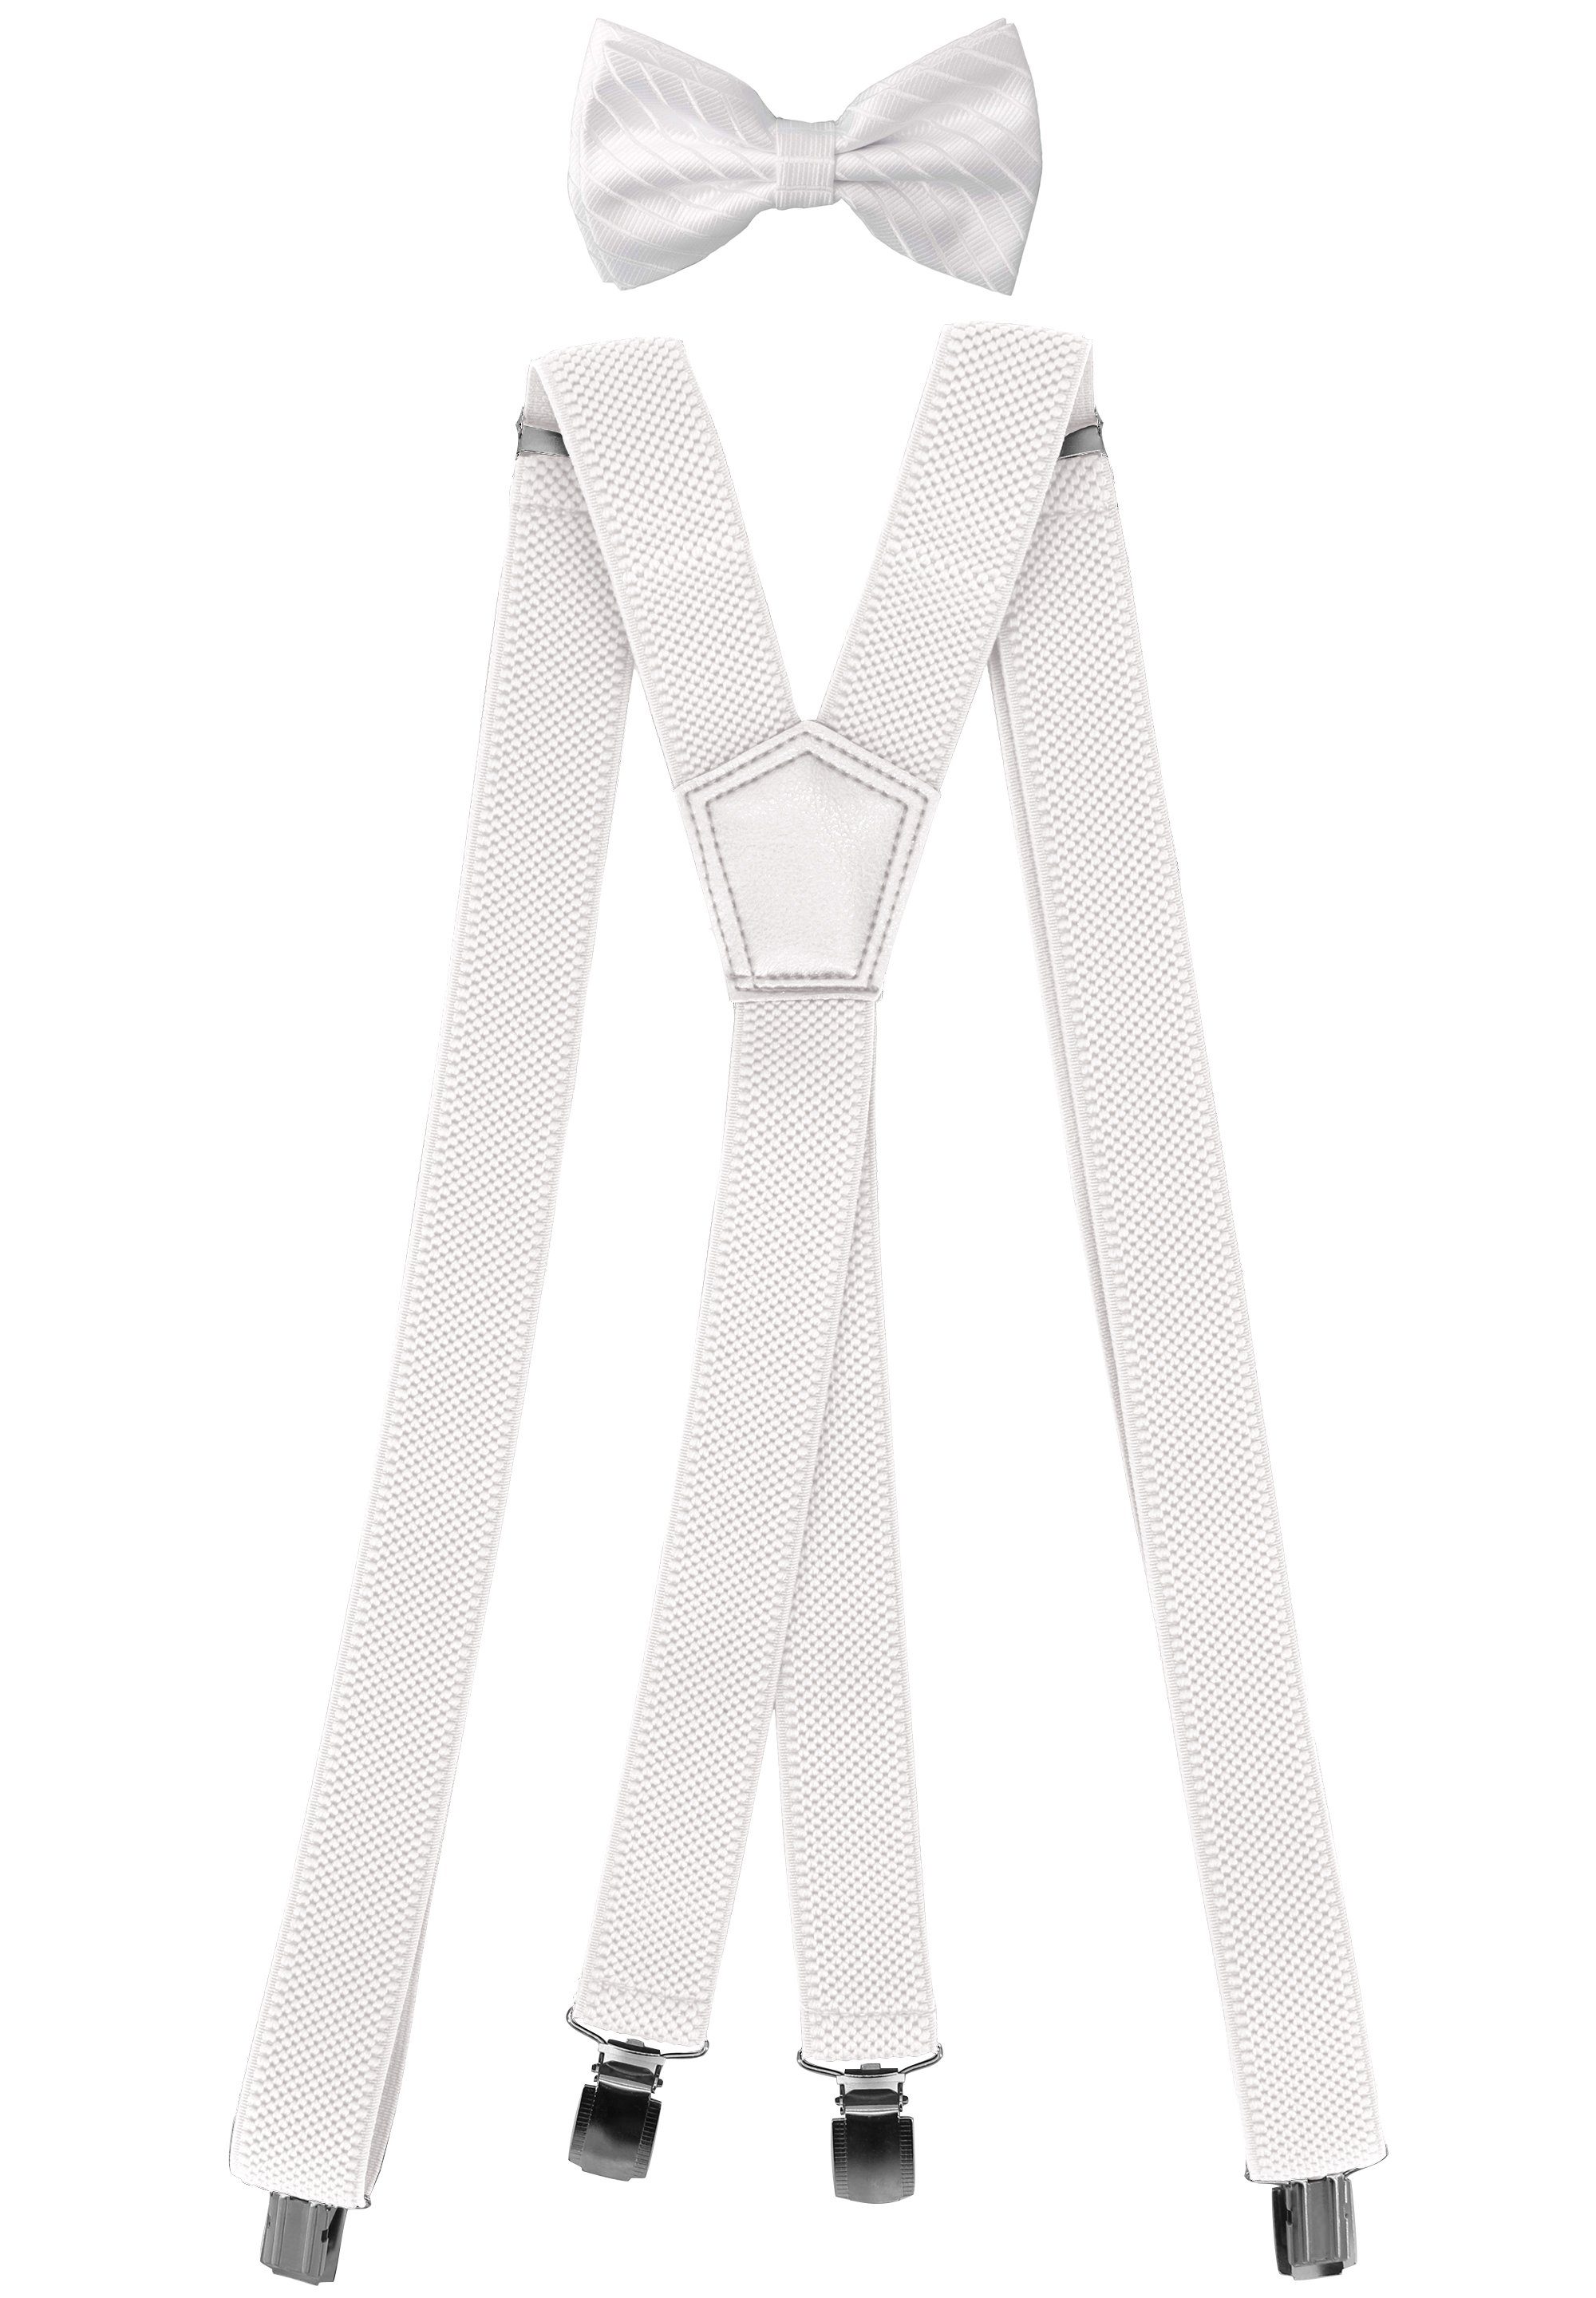 Fabio Farini Herren Streifen Set X-Form Hosenträger Struktur Hosenträger Fliege Weiß 3cm mit Fliege - Weiß Unifarben Pack passender Hosenträger 3cm